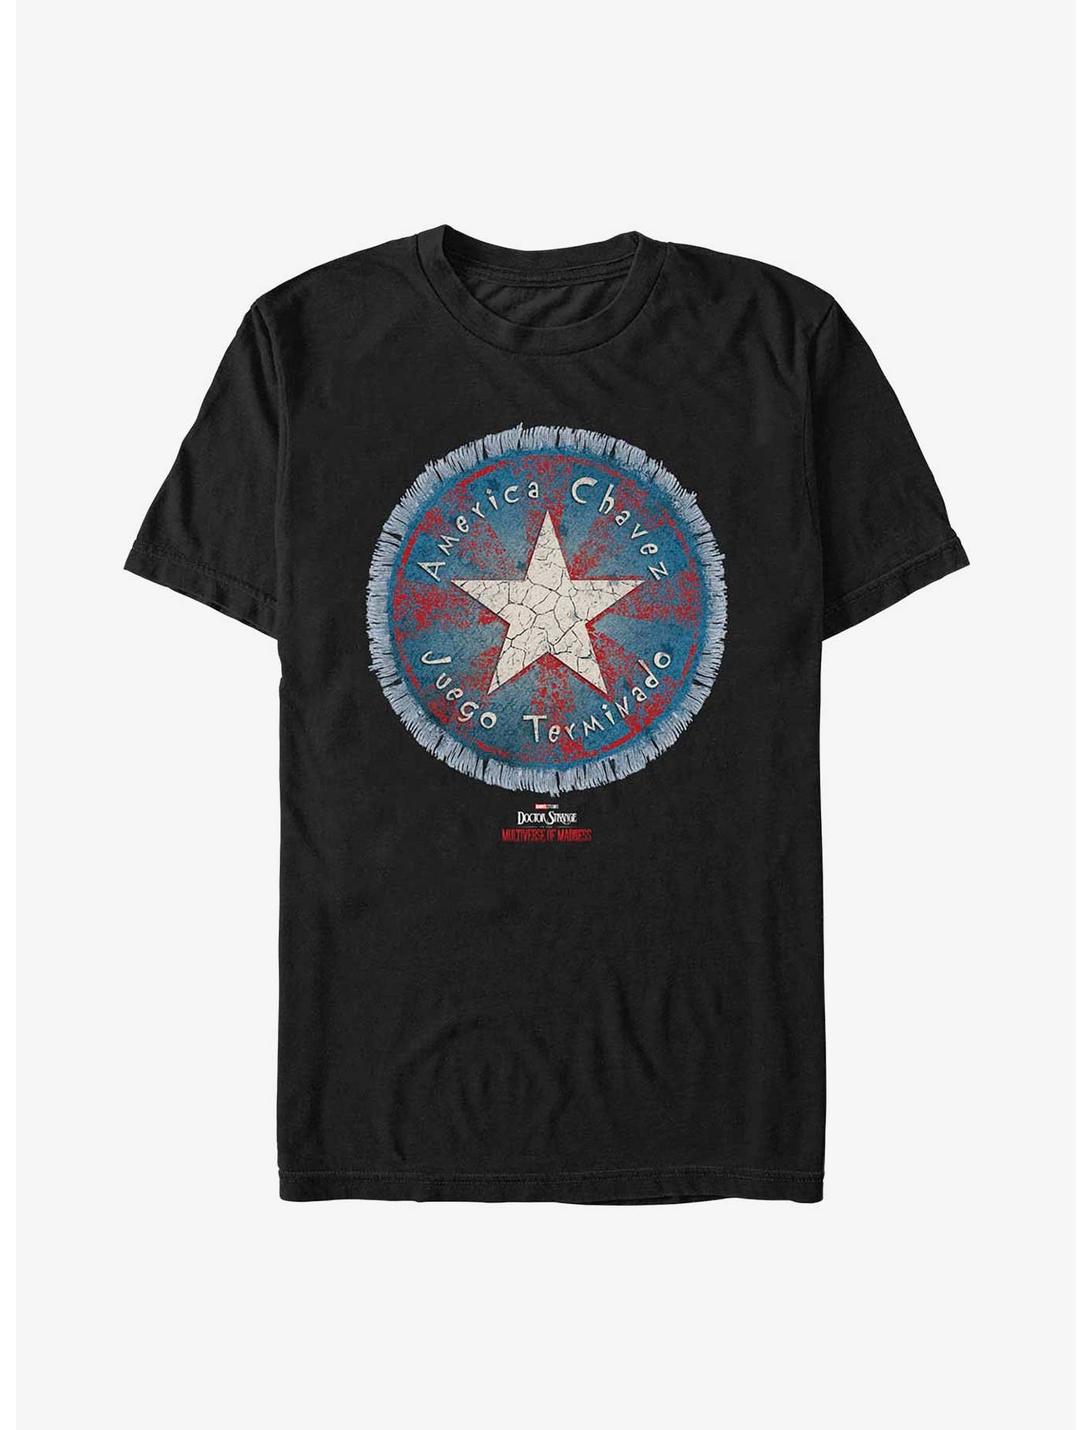 Marvel Doctor Strange Multiverse Of Madness America Chavez Badge T-Shirt, BLACK, hi-res